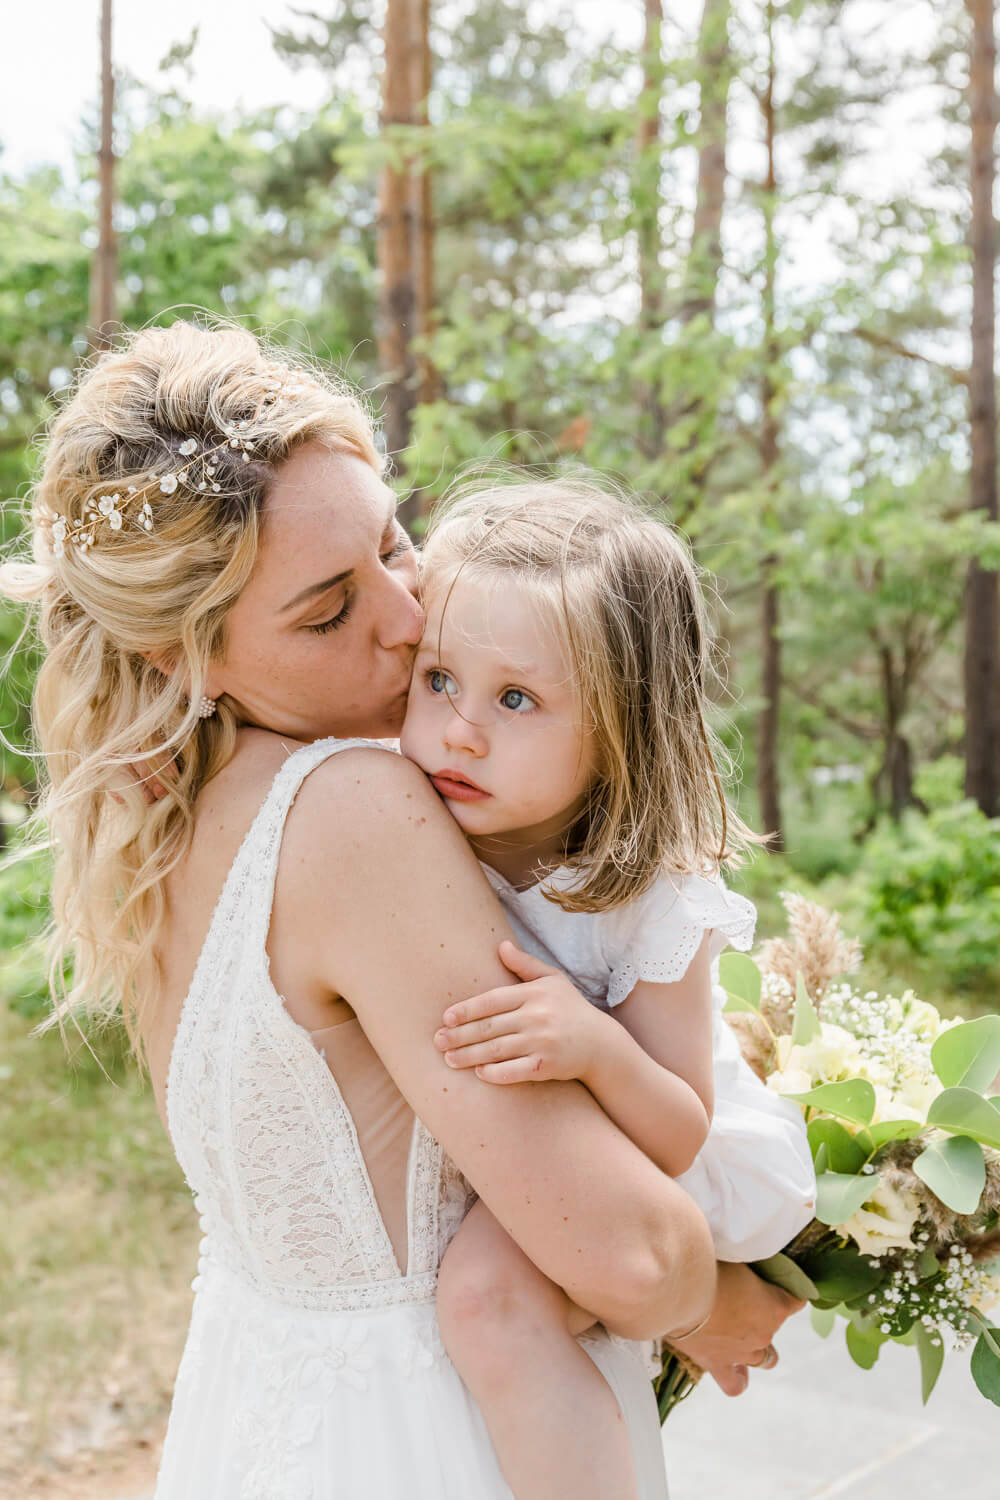 Braut kuschelt ihre Tochter am Hochzeitstag. Fotoshooting im Wald auf dem Darss.